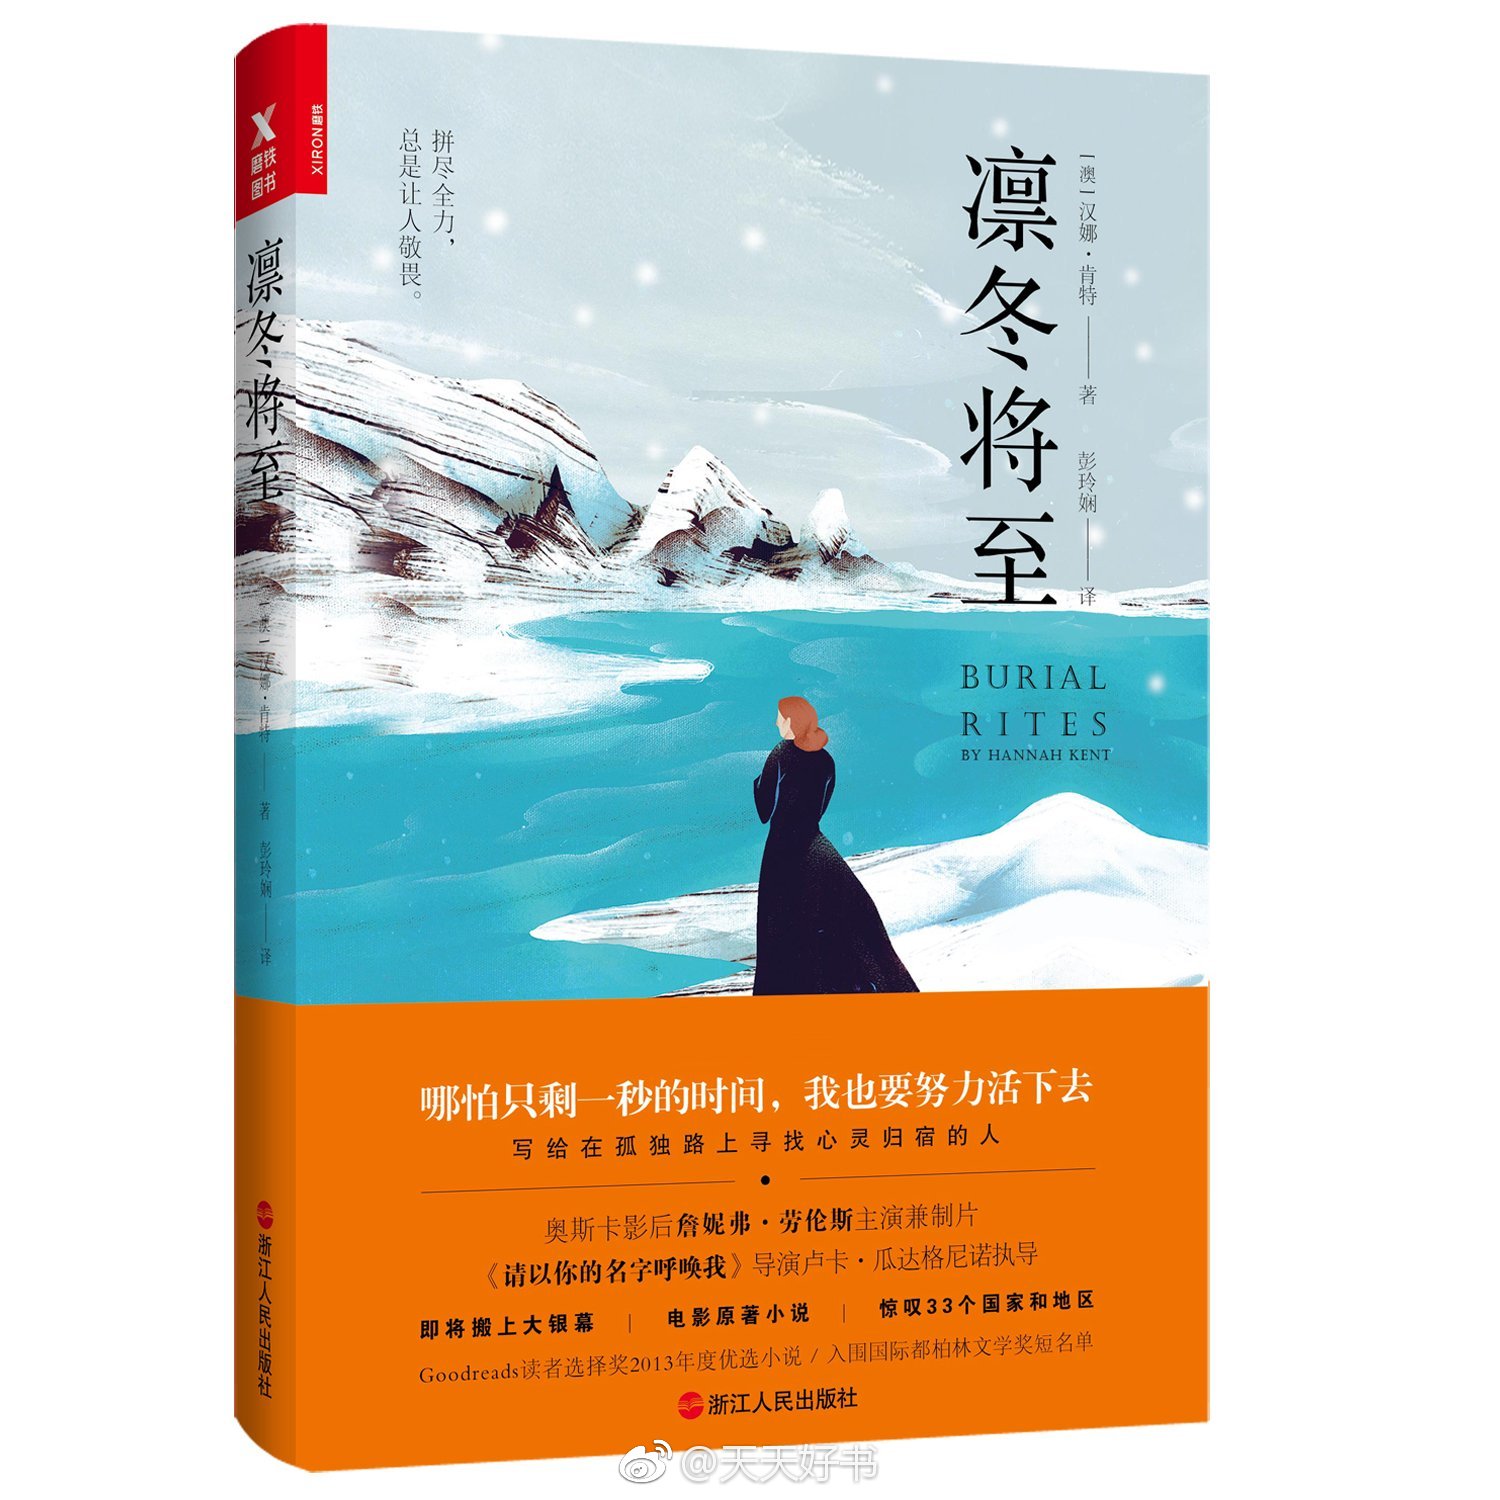 【新书】《凛冬将至》是作者汉娜·肯特的小说处女作,2011年获得